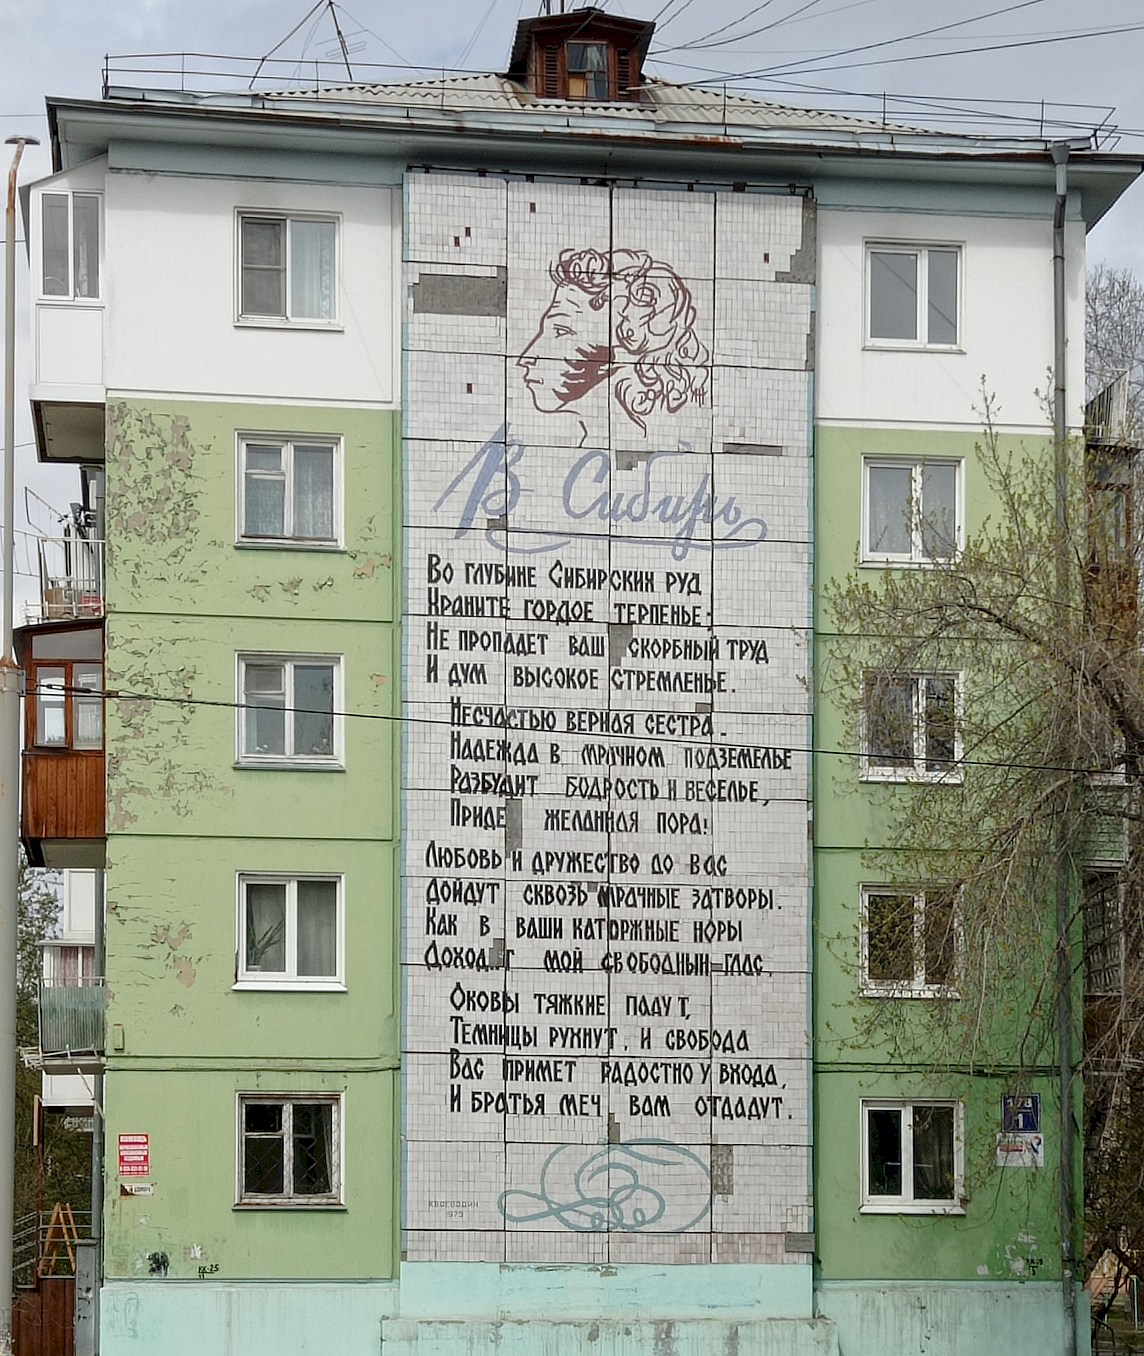 Angarsk, 178 квартал, 1. Монументальное искусство (мозаики, росписи)